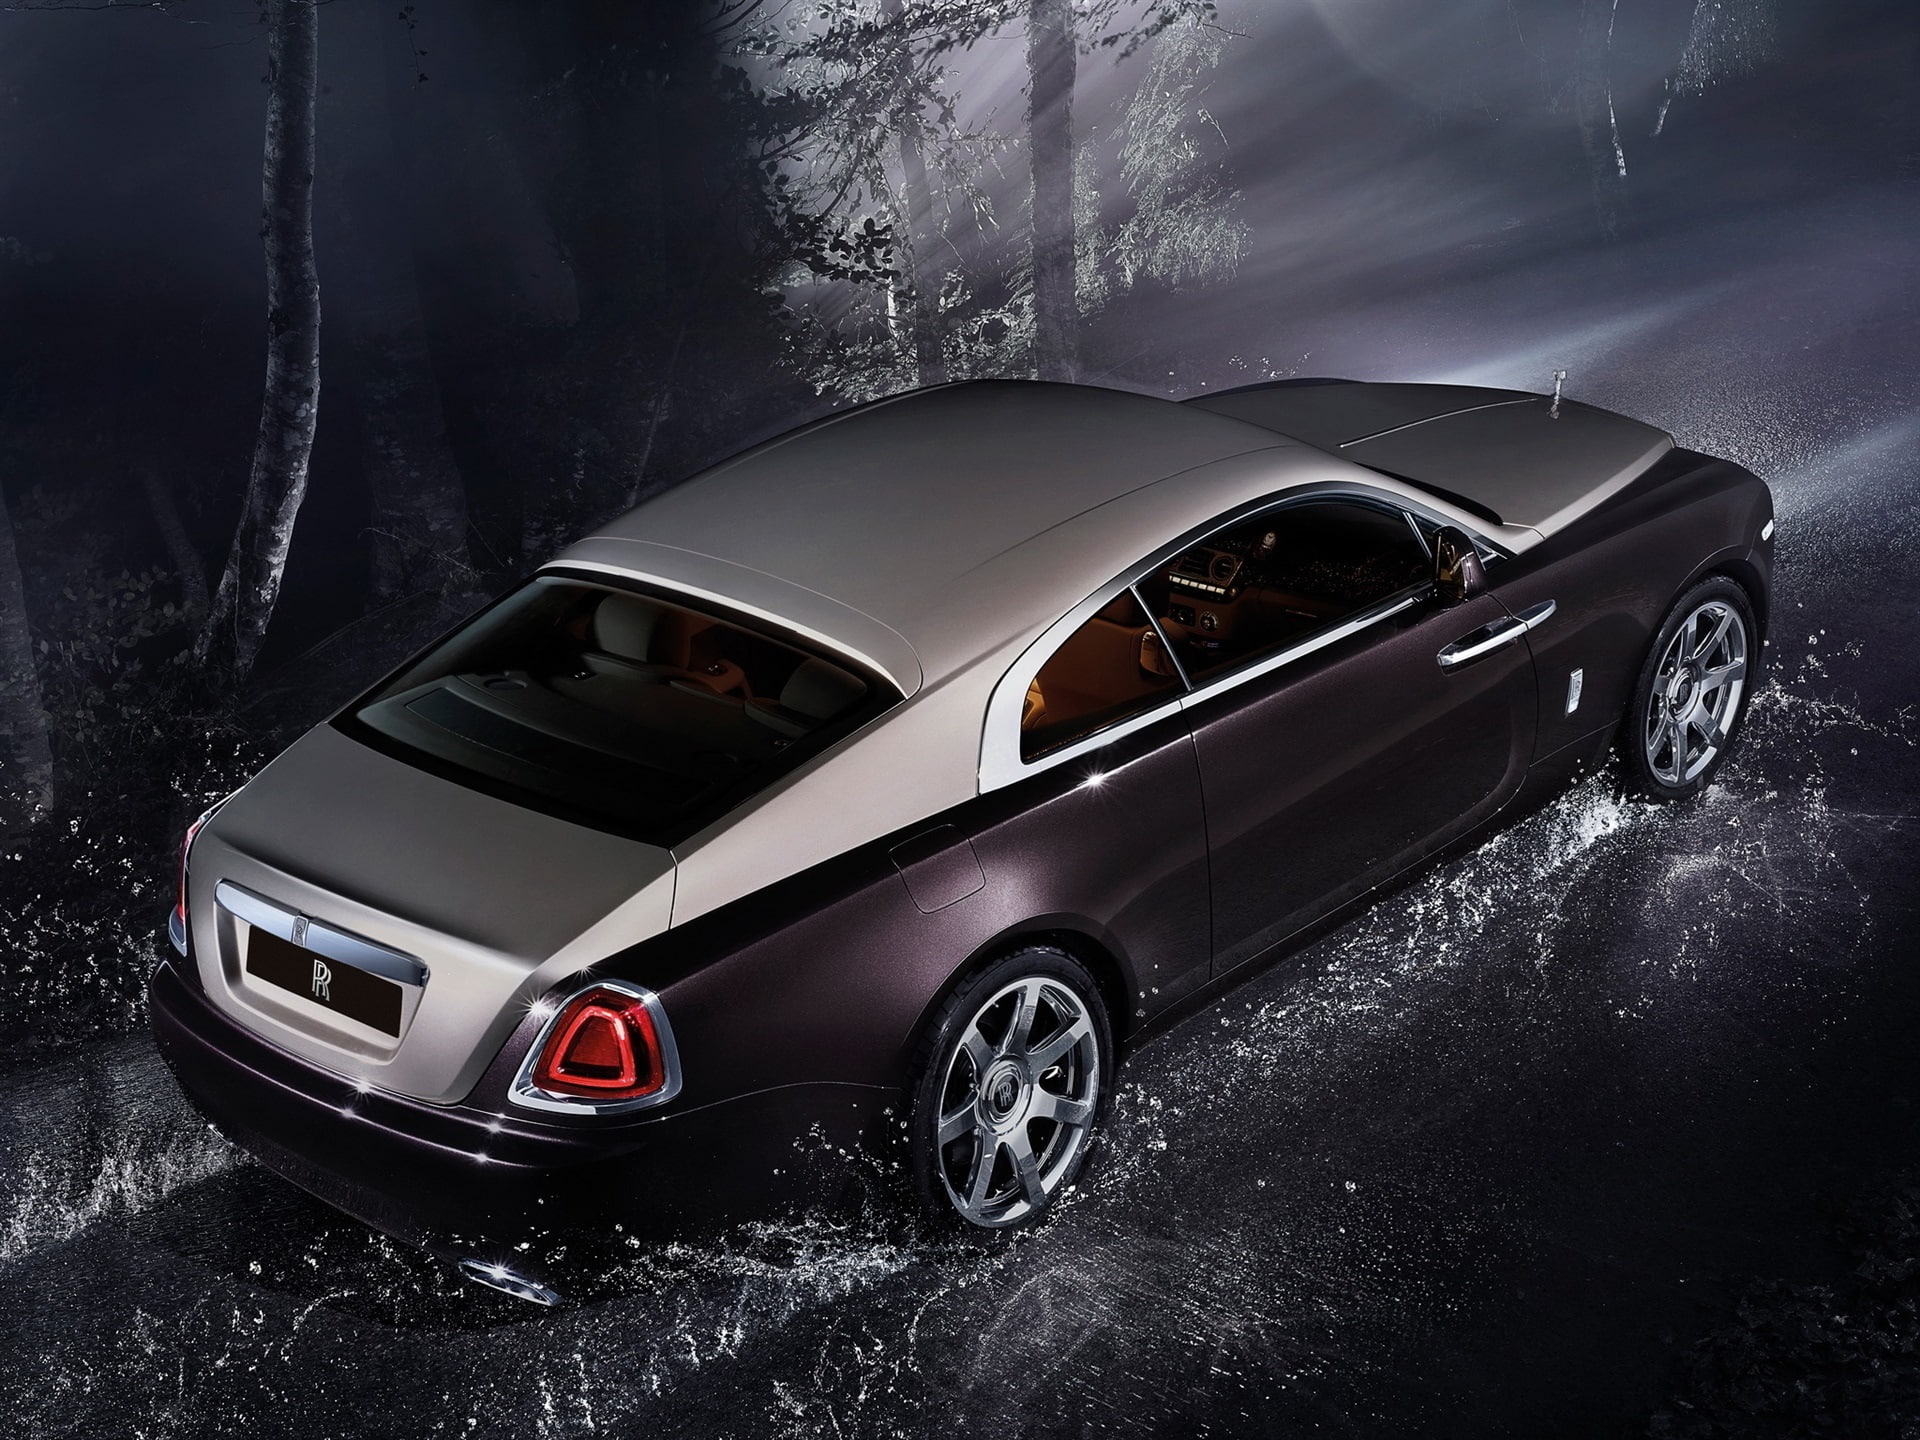 Rolls-Royce Wraith luxury car at night